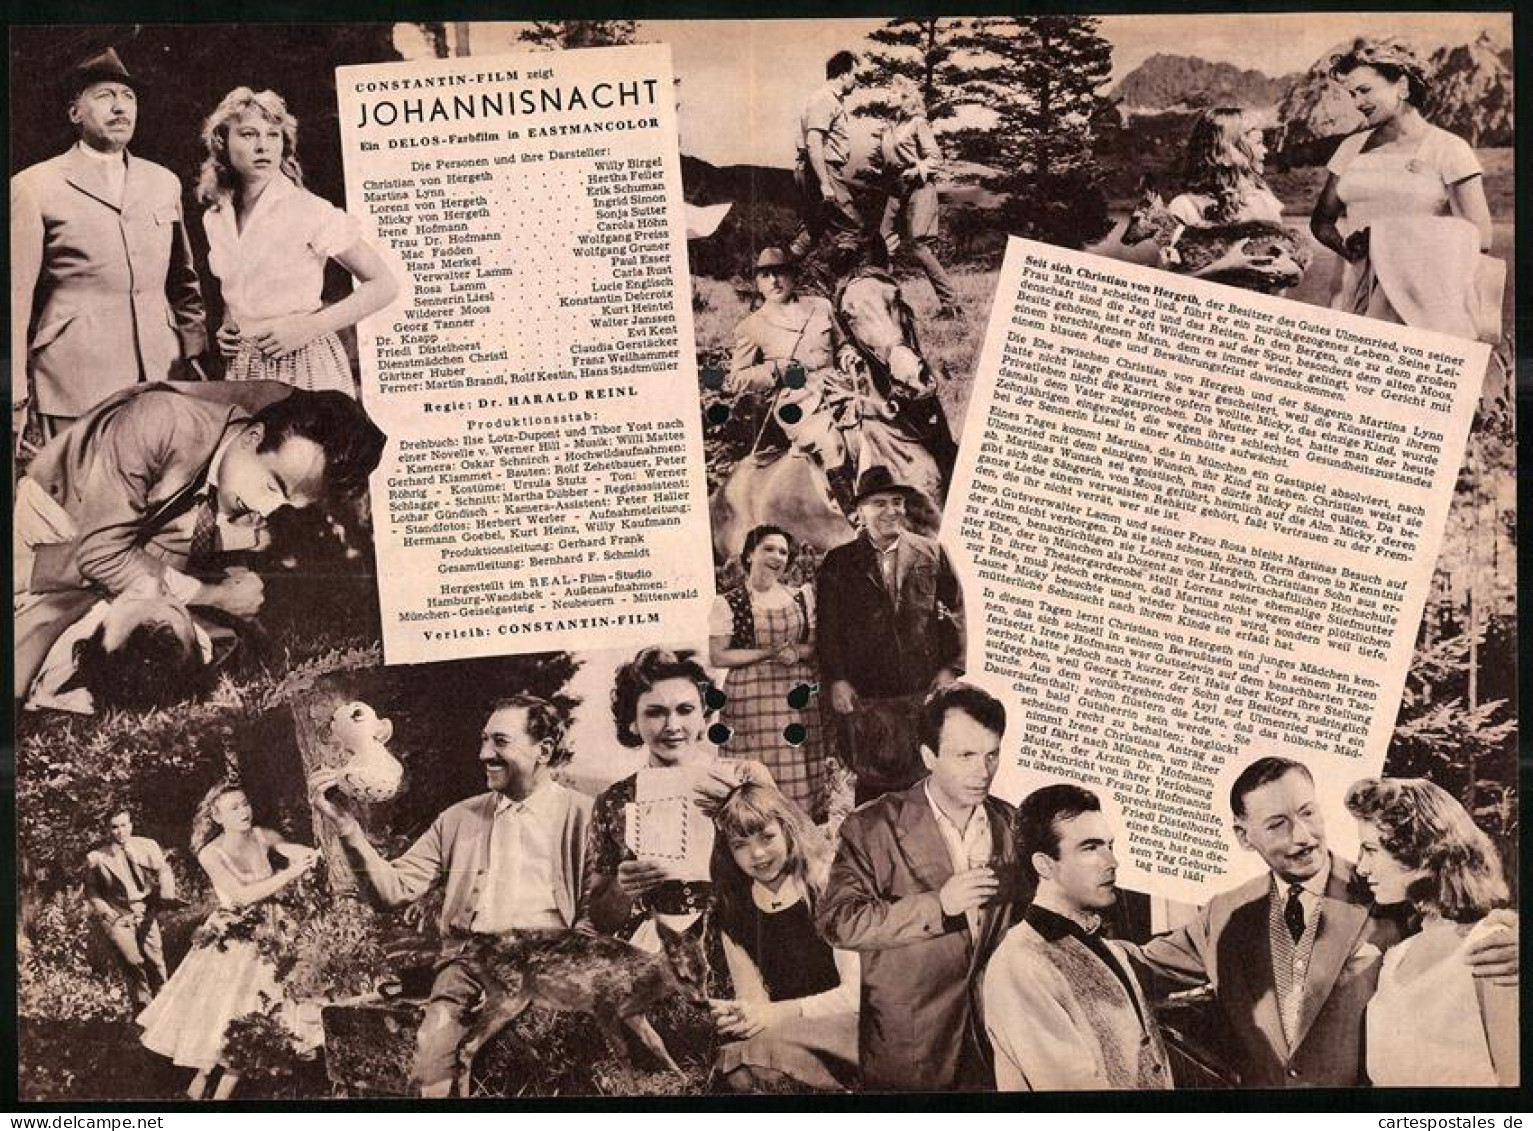 Filmprogramm DNF, Johannisnacht, Willy Birgel, Hertha Feiler, Carla Rust, Regie Dr. Harald Reinl  - Riviste